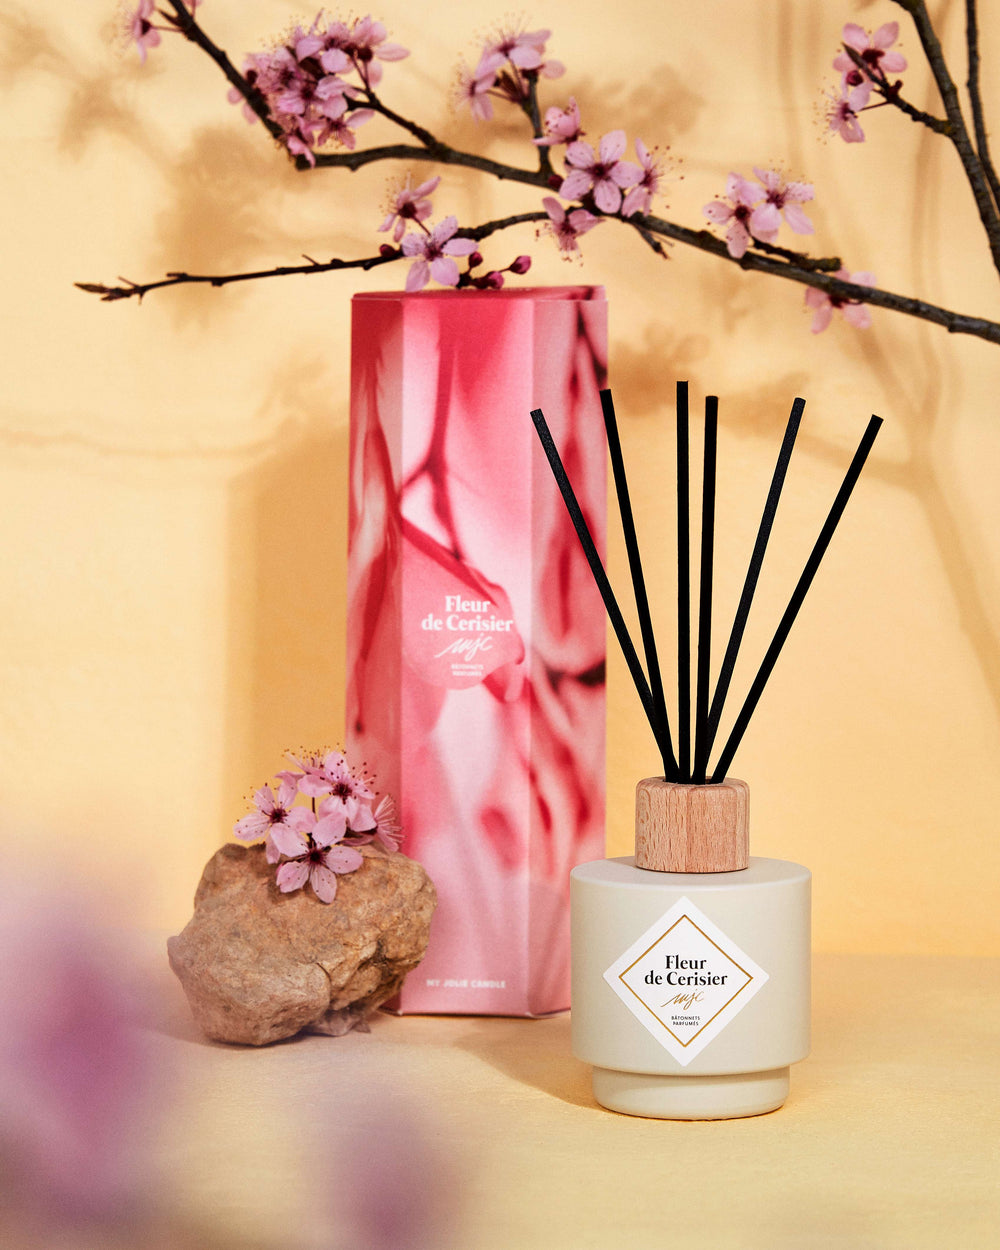 Diffuseur de Parfum Cerisier en fleurs - Fleur de thé